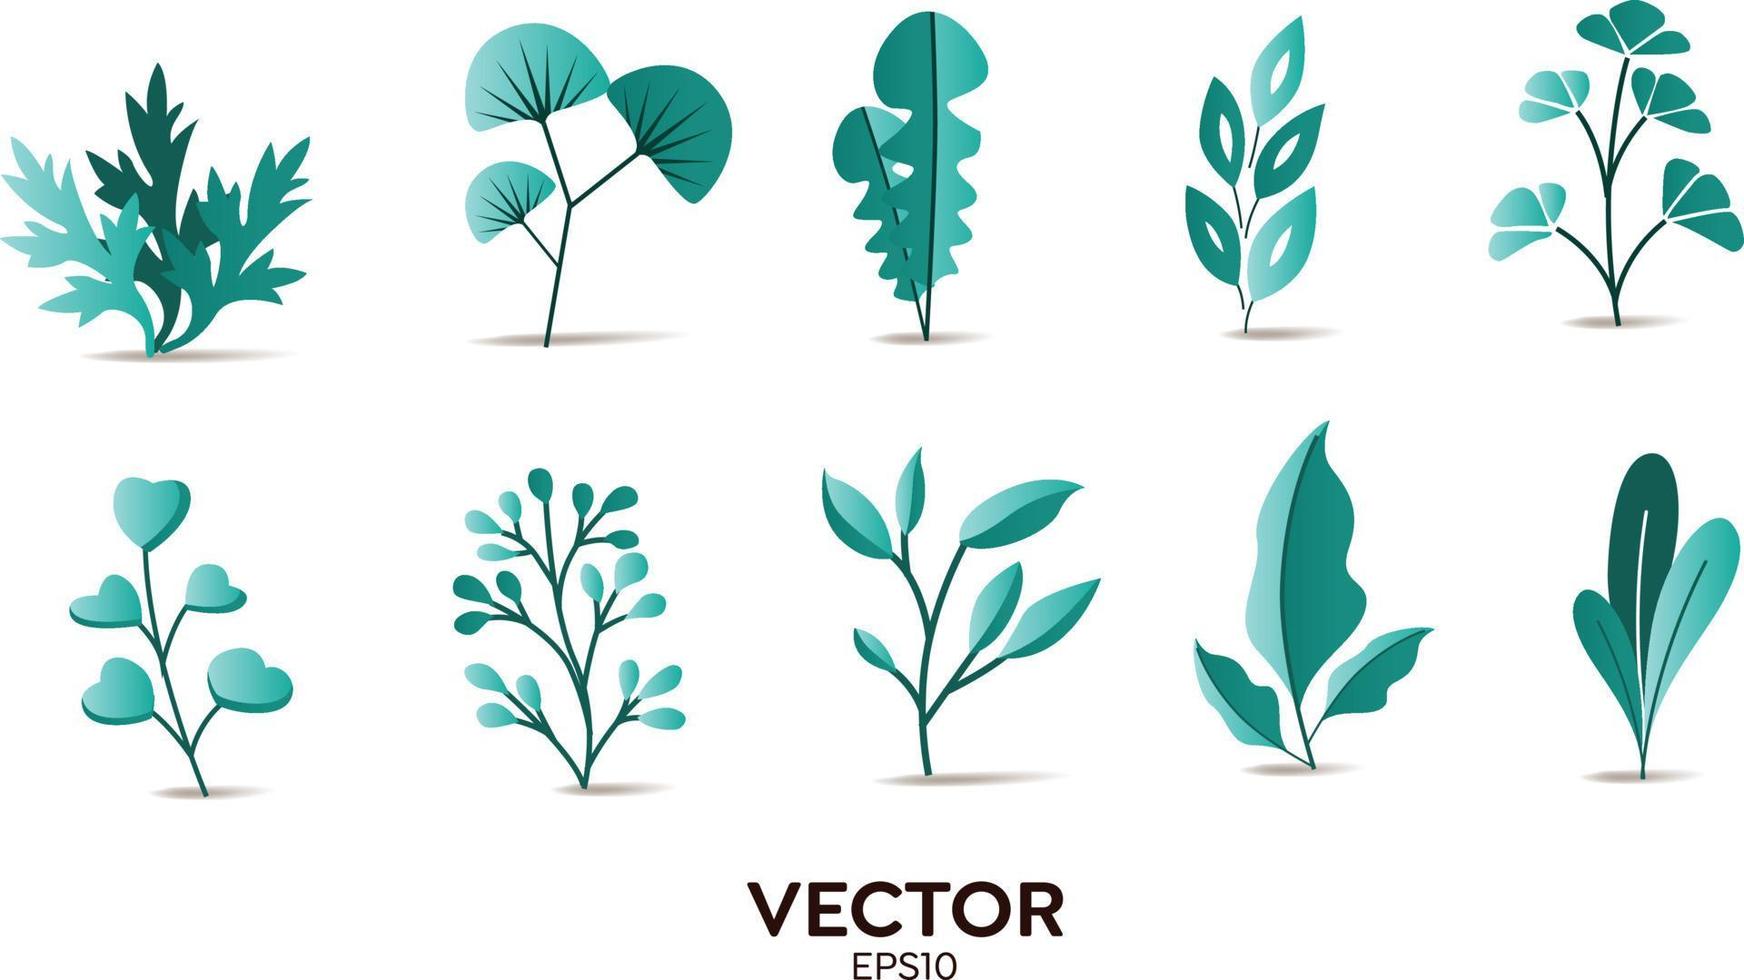 vektor designer element set samling av tosca djungel ormbunkar, tropiska eukalyptus konst naturliga löv örtblad i vektor stil. dekorativ skönhet elegant illustration för design